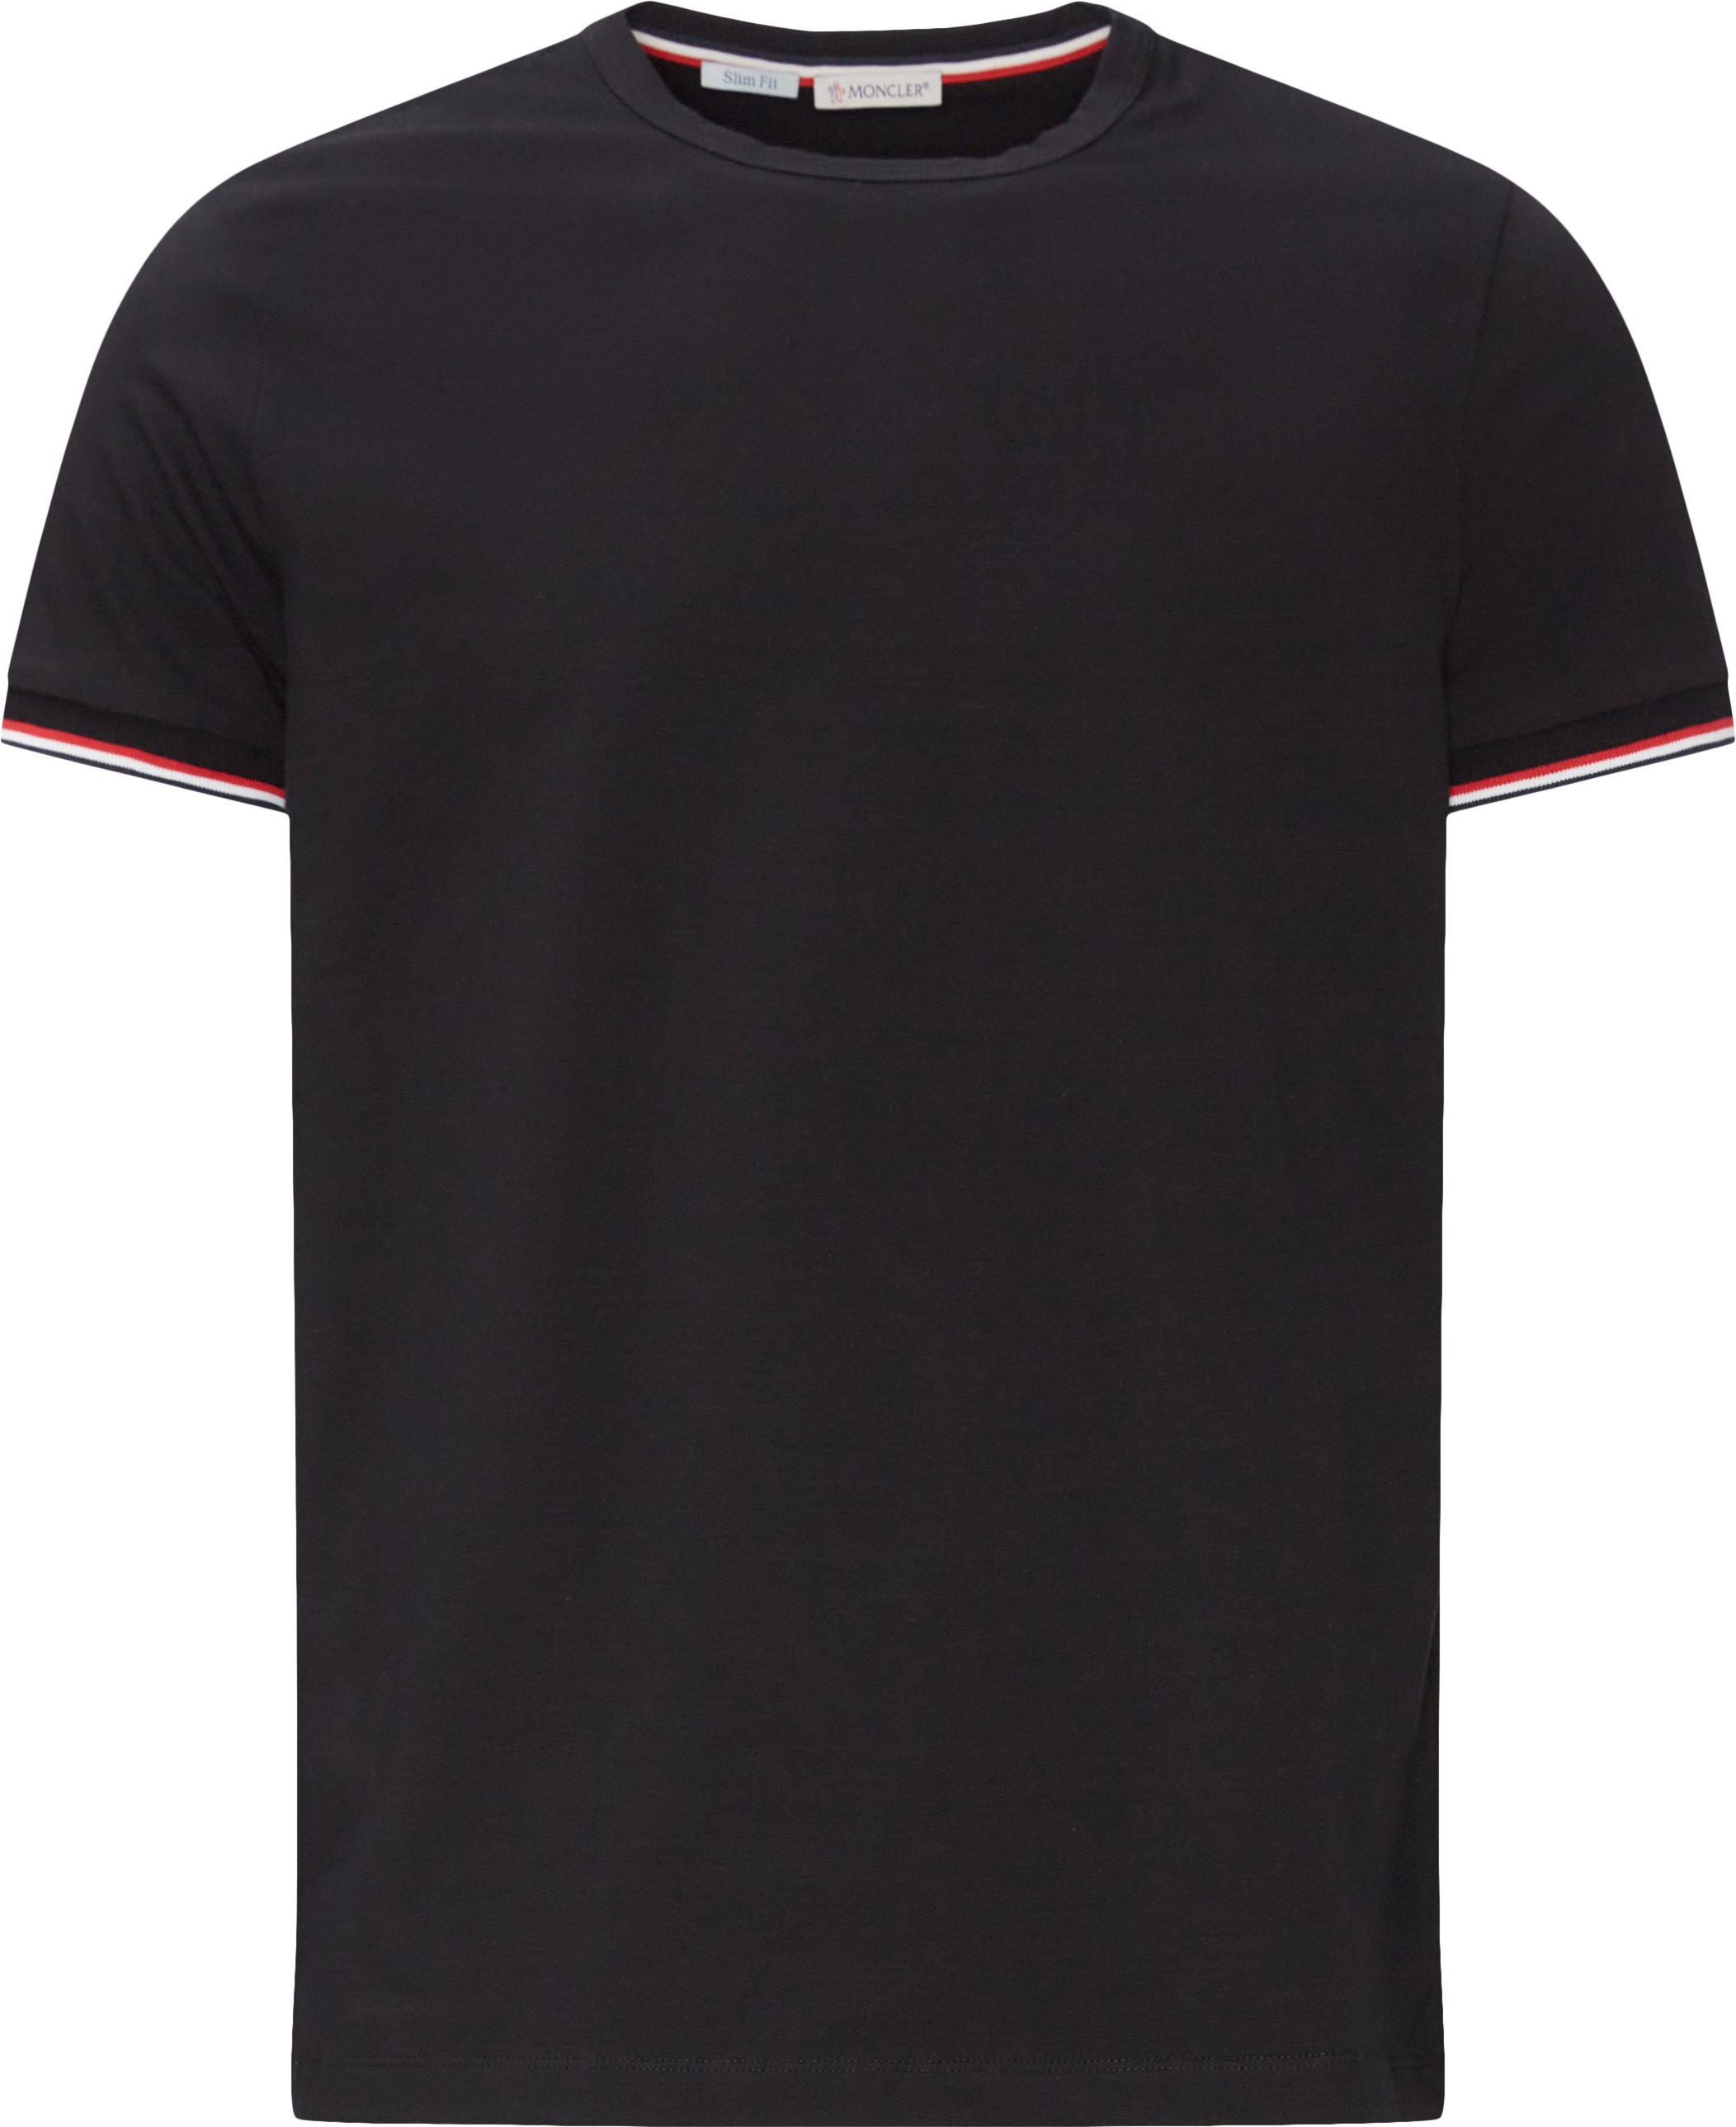 Maglia T-shirt - T-shirts - Slim fit - Sort